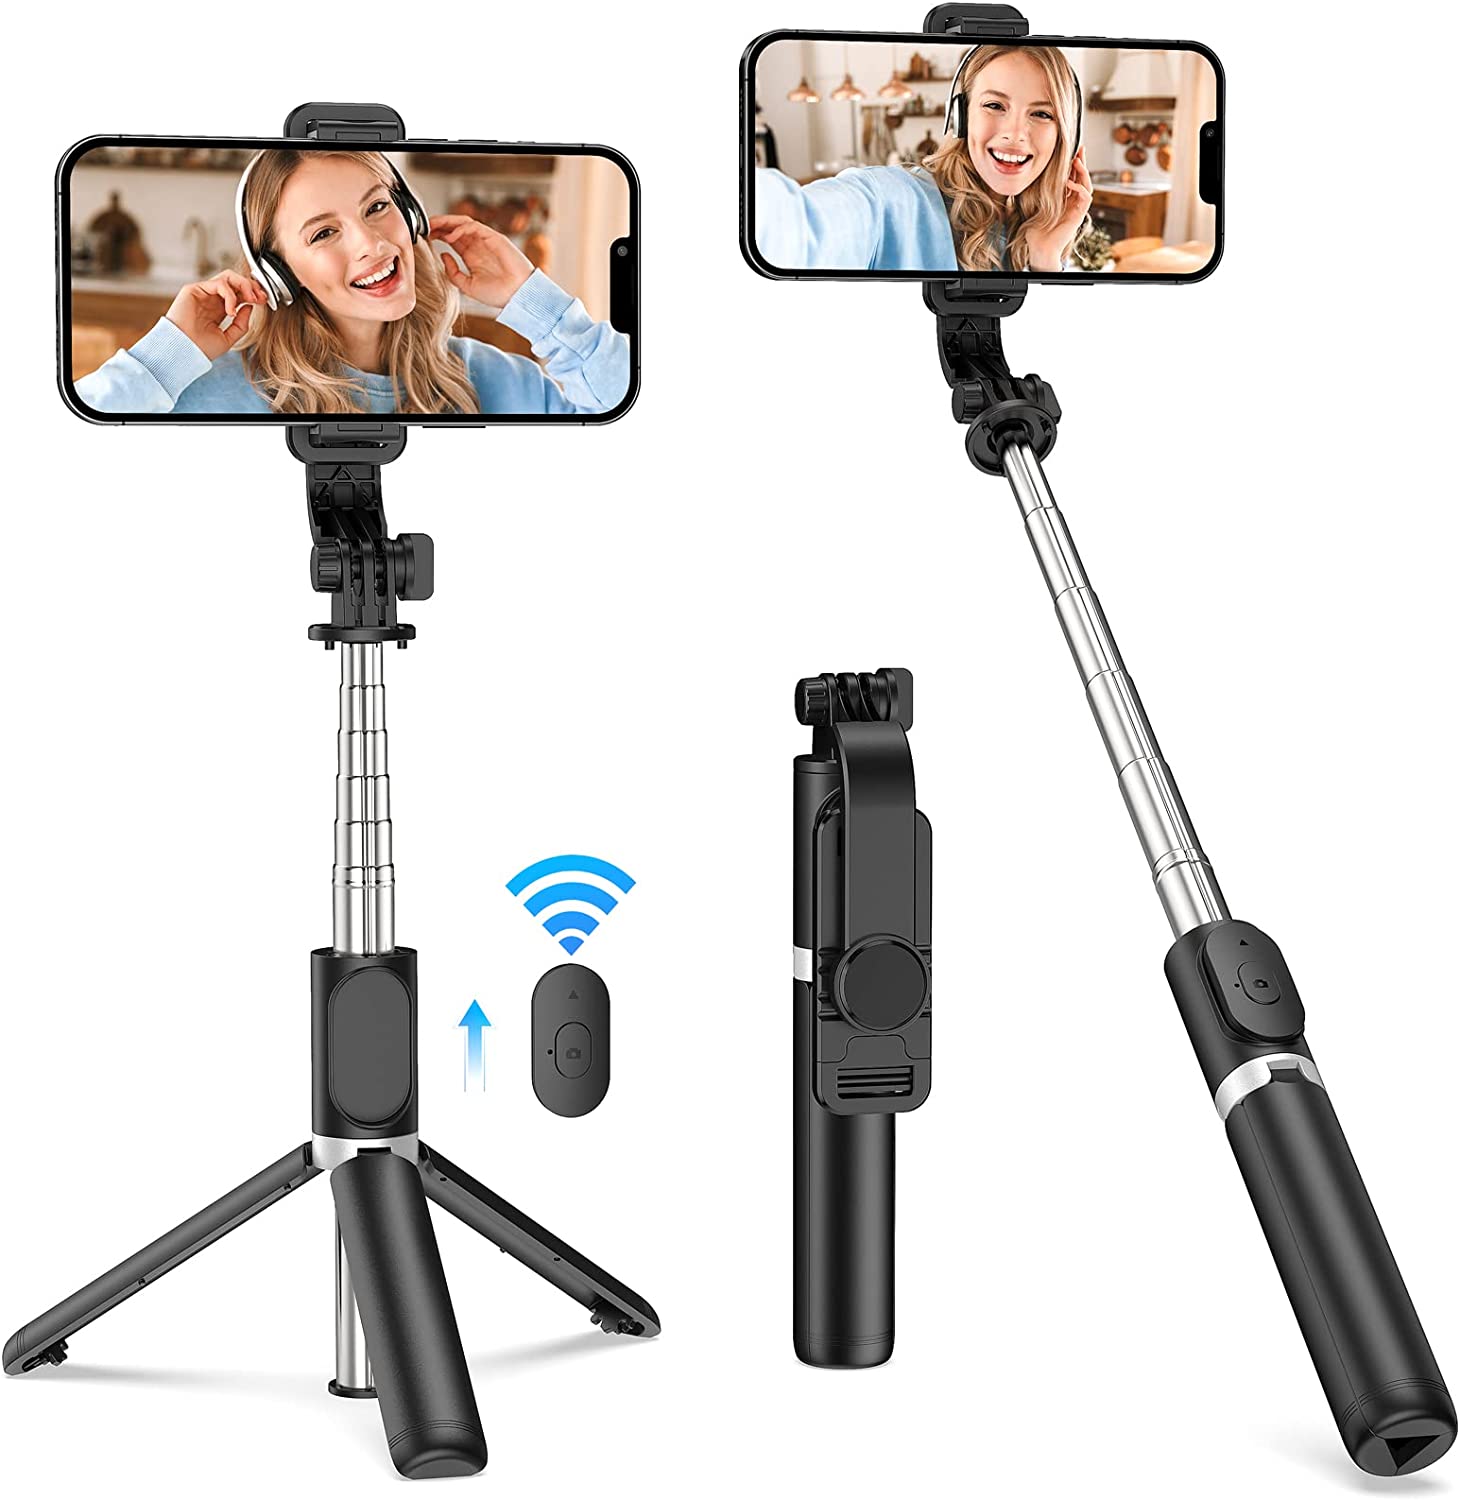 JiaSiFu Portable Selfie Stick, Handheld Tripod – Just $18.98 at Amazon